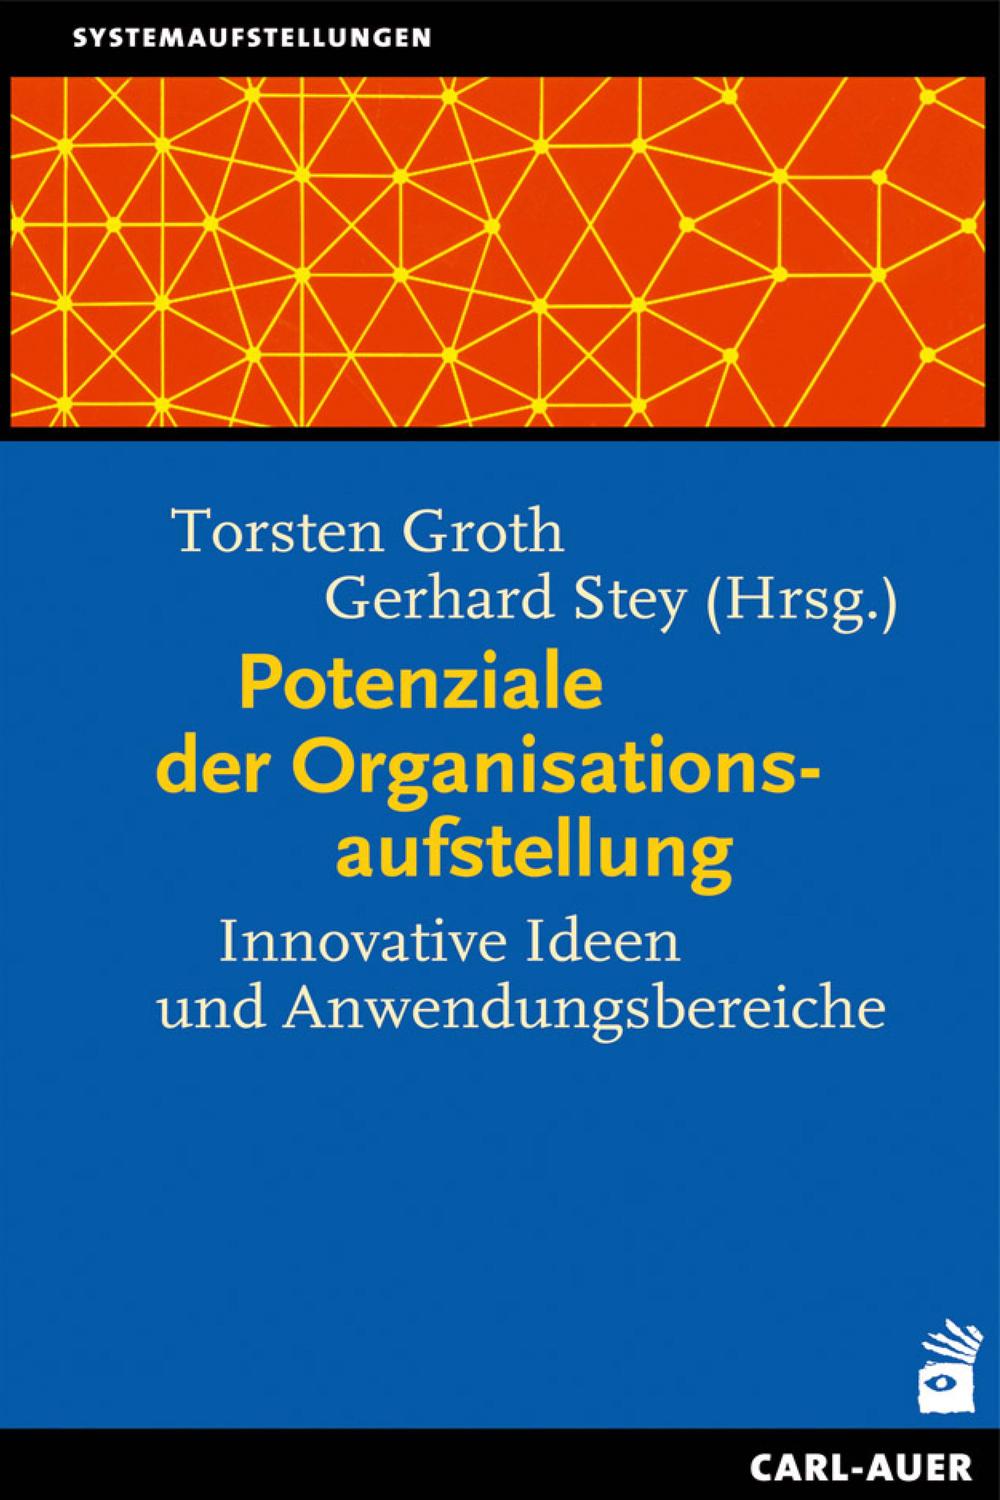 Potenziale der Organisationsaufstellung - Torsten Groth, Gerhard Stey